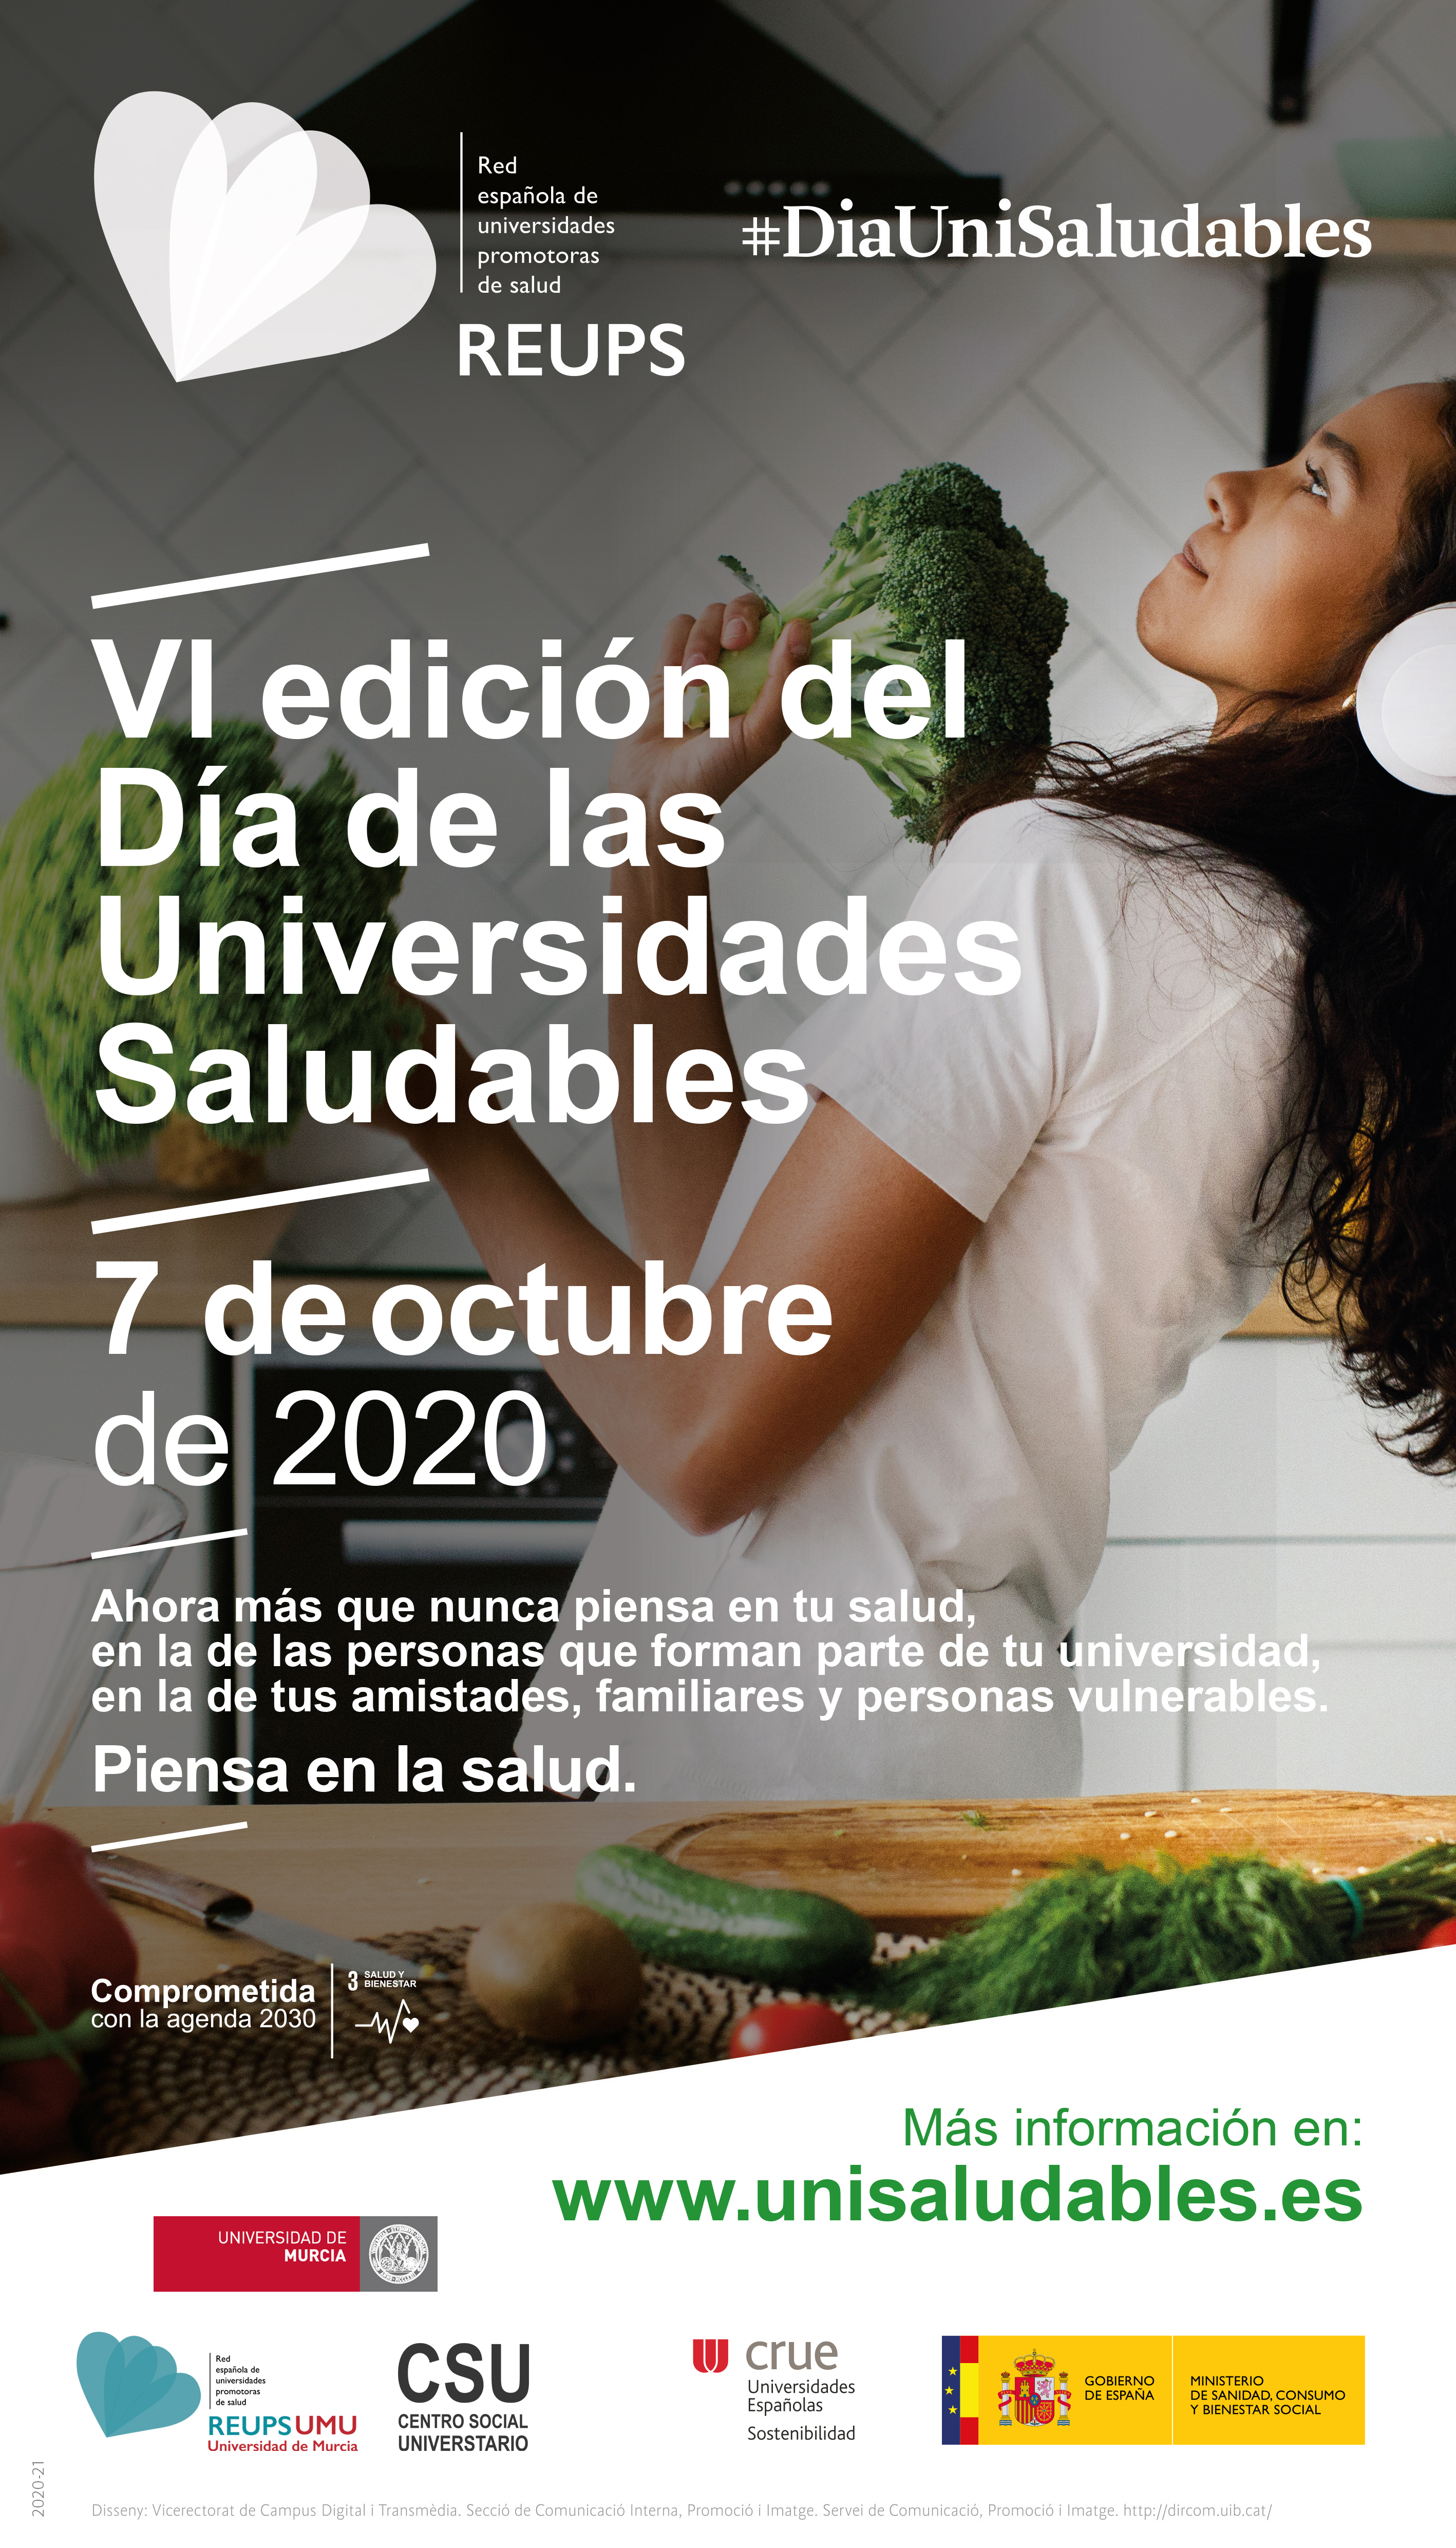 Dia de las Universidades saludables Murcia UMU